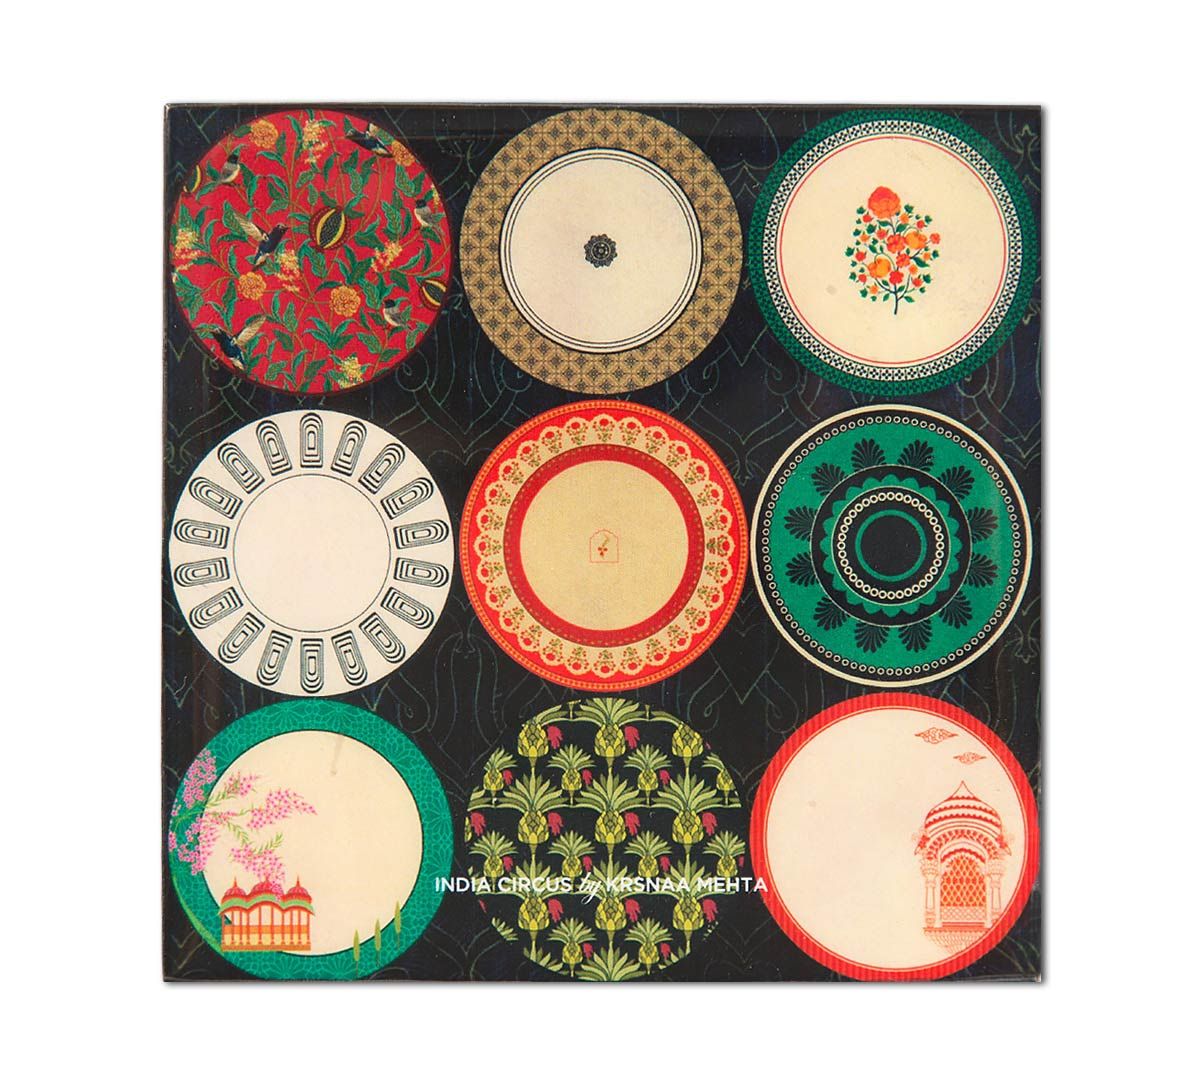 India Circus Platter Portrayal Table Coaster